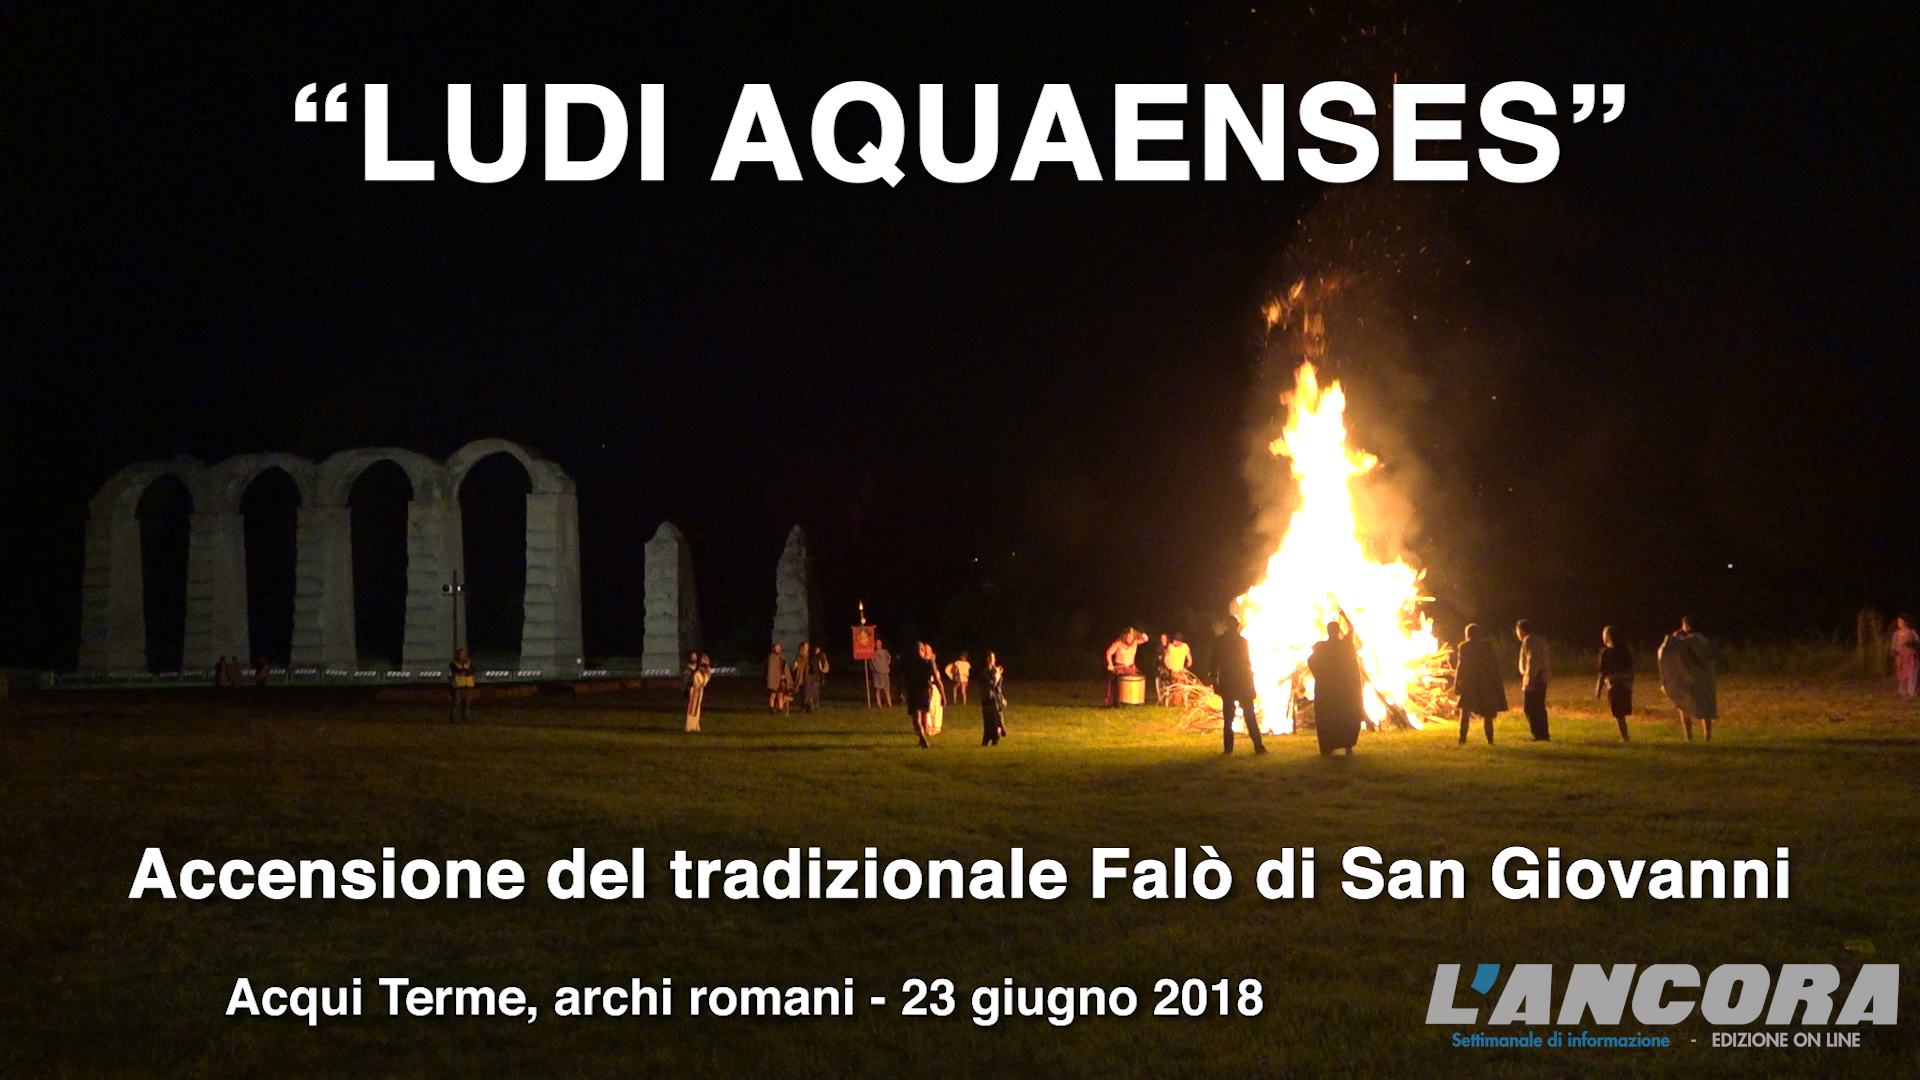 LUDI AQUAENSES - Accensione del tradizionale Falò di San Giovanni (VIDEO)